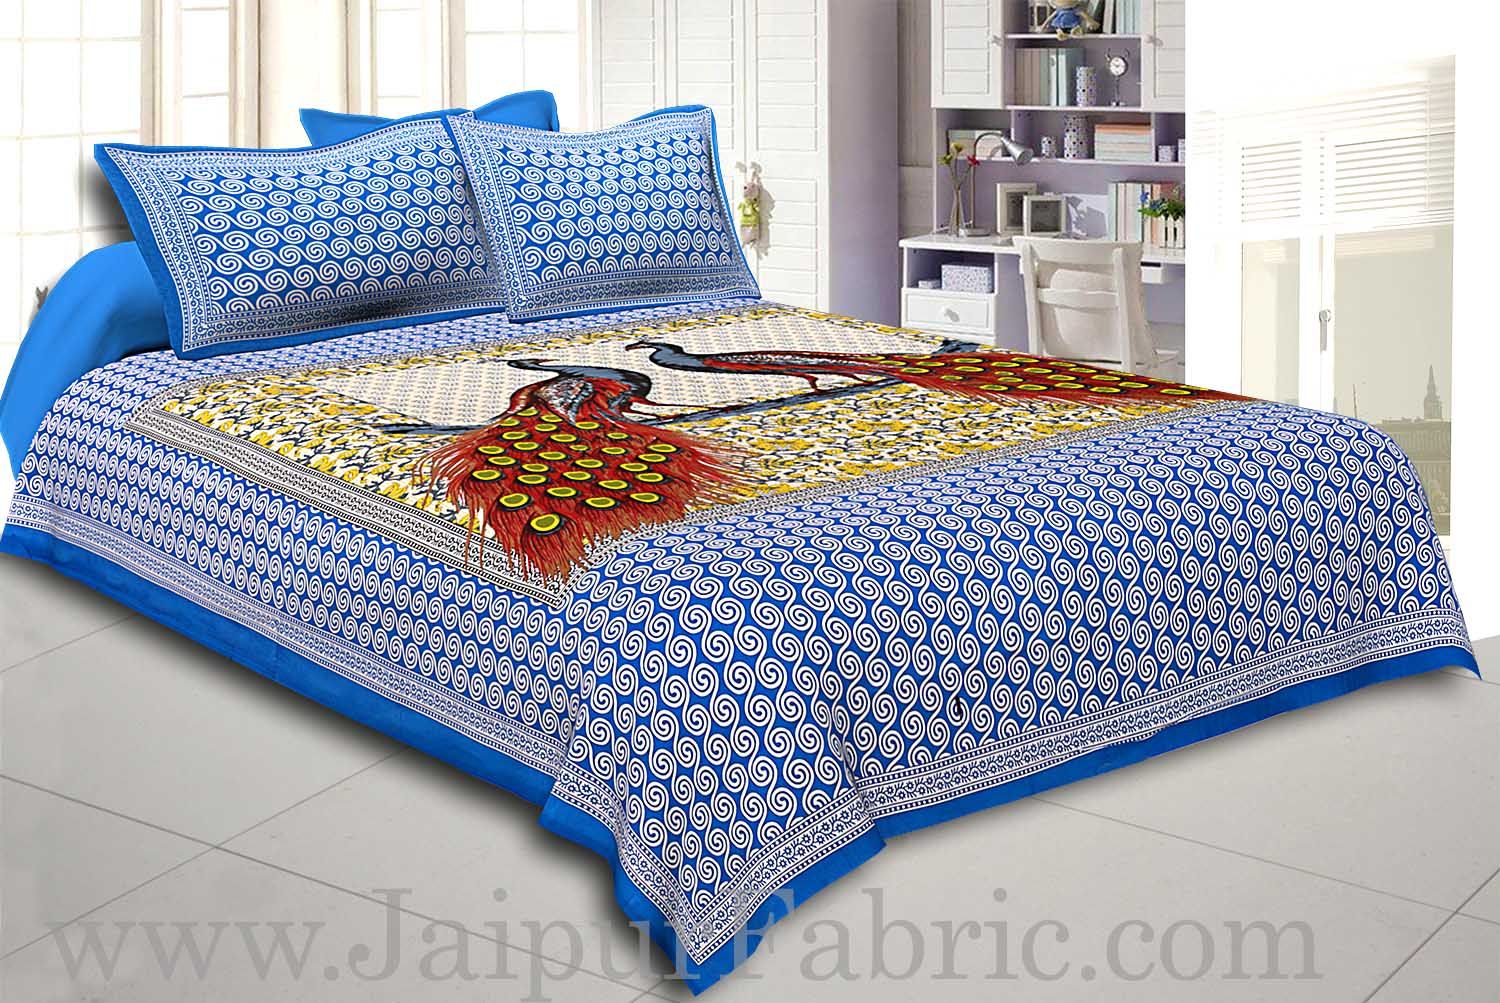 Firozi Border Double Peacock Design Coton Double Bedsheet